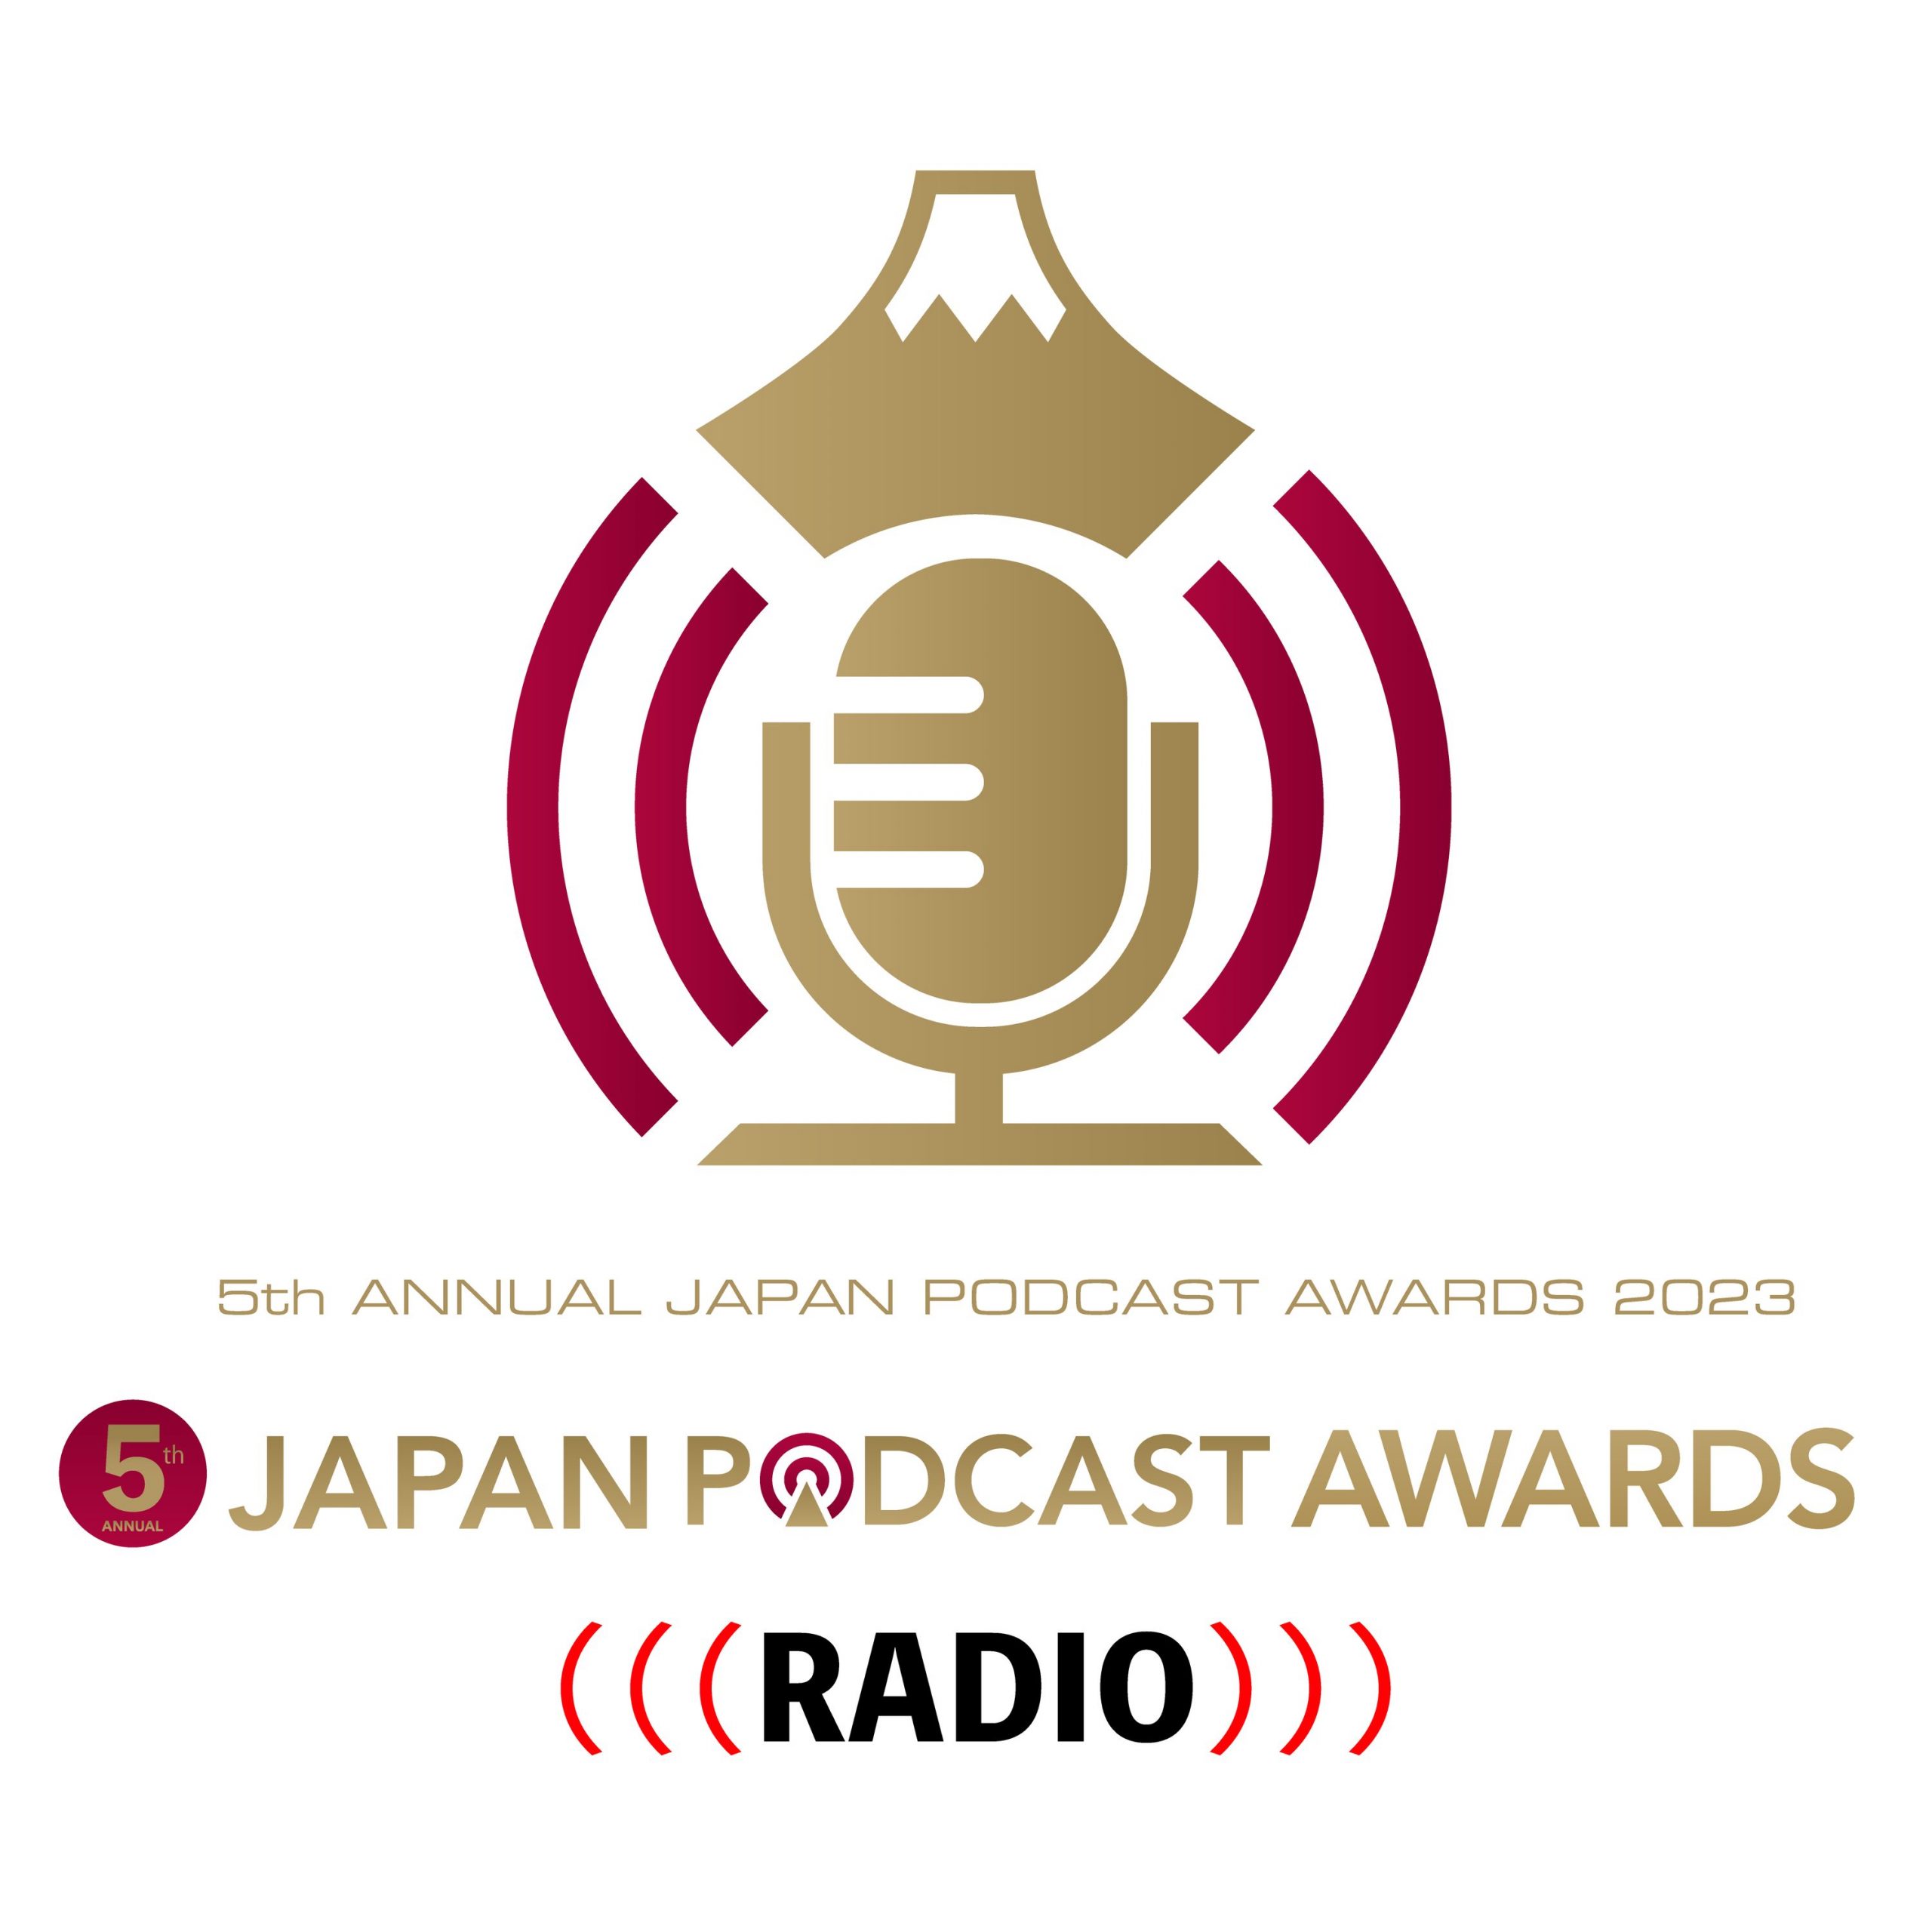 今、絶対に聴くべきポッドキャストはコレだ！第5回 JAPAN PODCAST AWARDS ラジオ supported by Audible